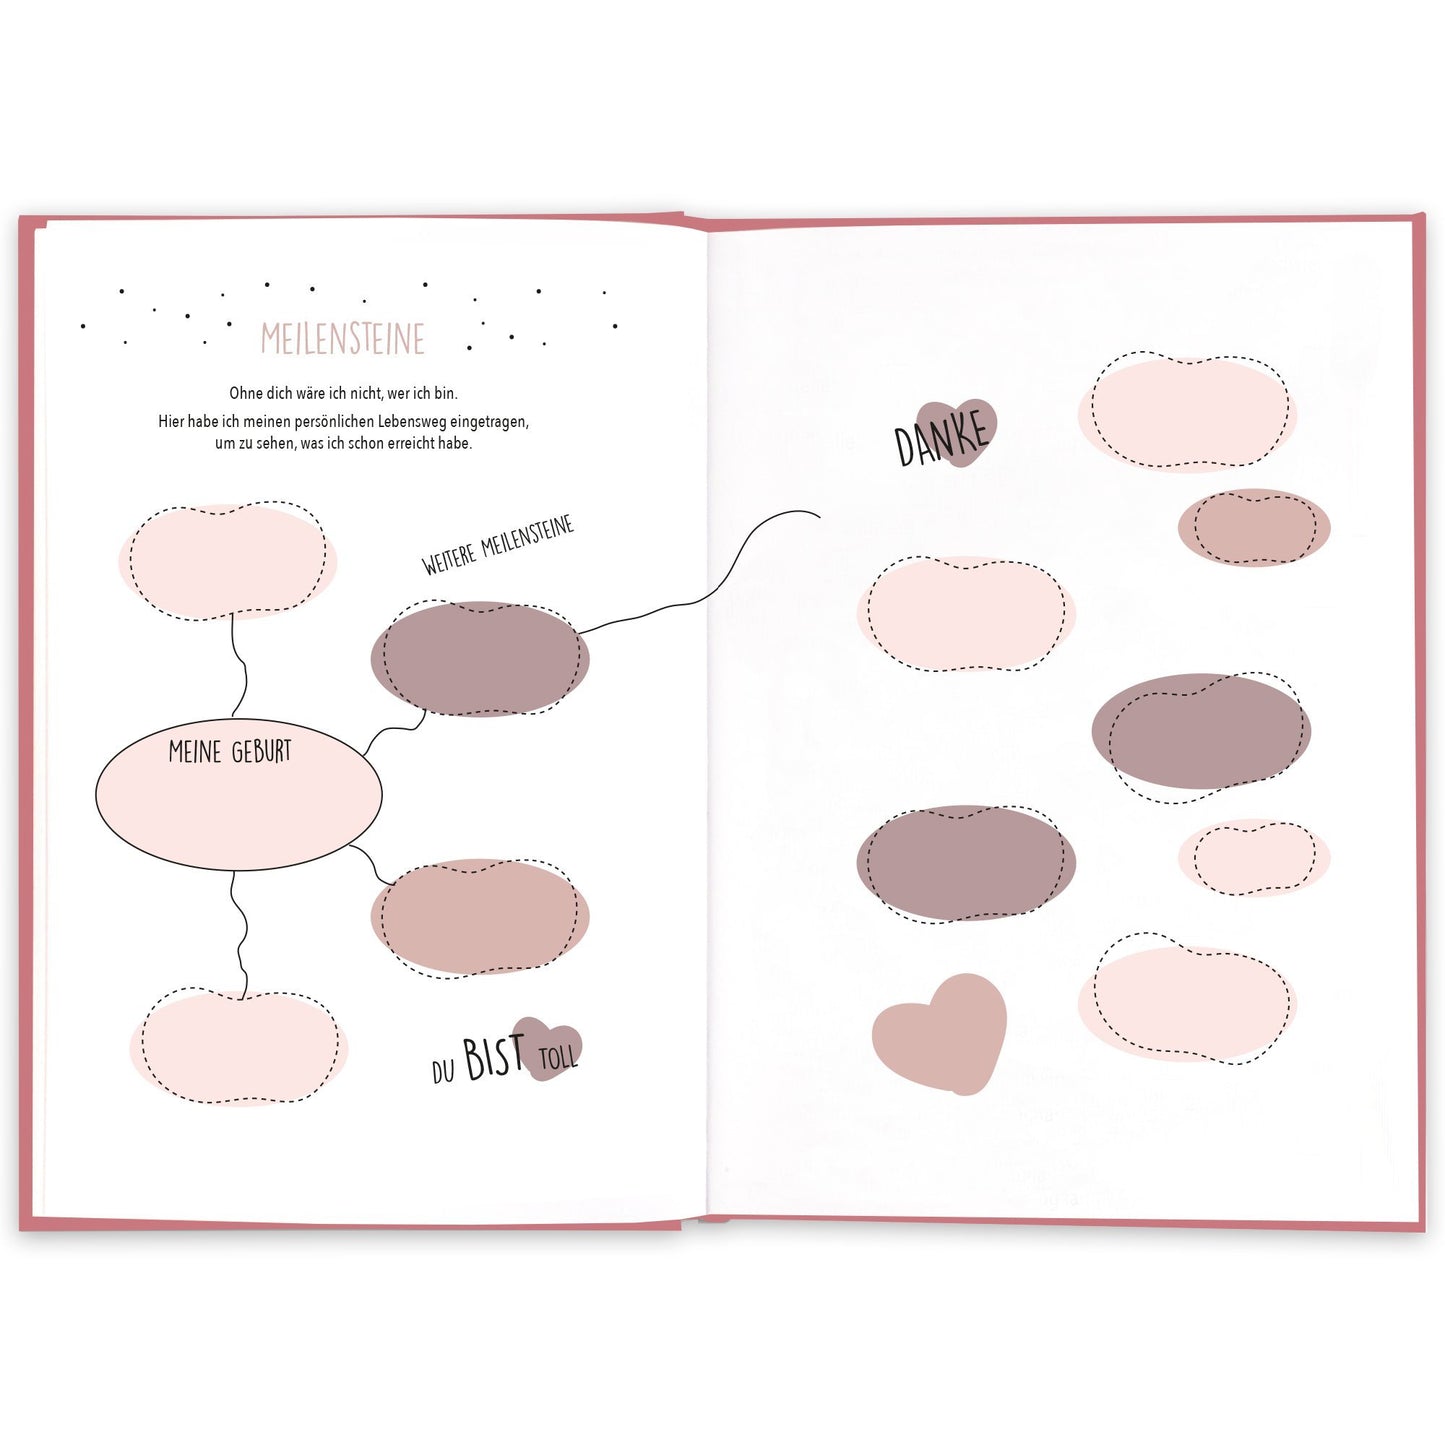 Mama Geschenkbuch - Cupcakes & Kisses